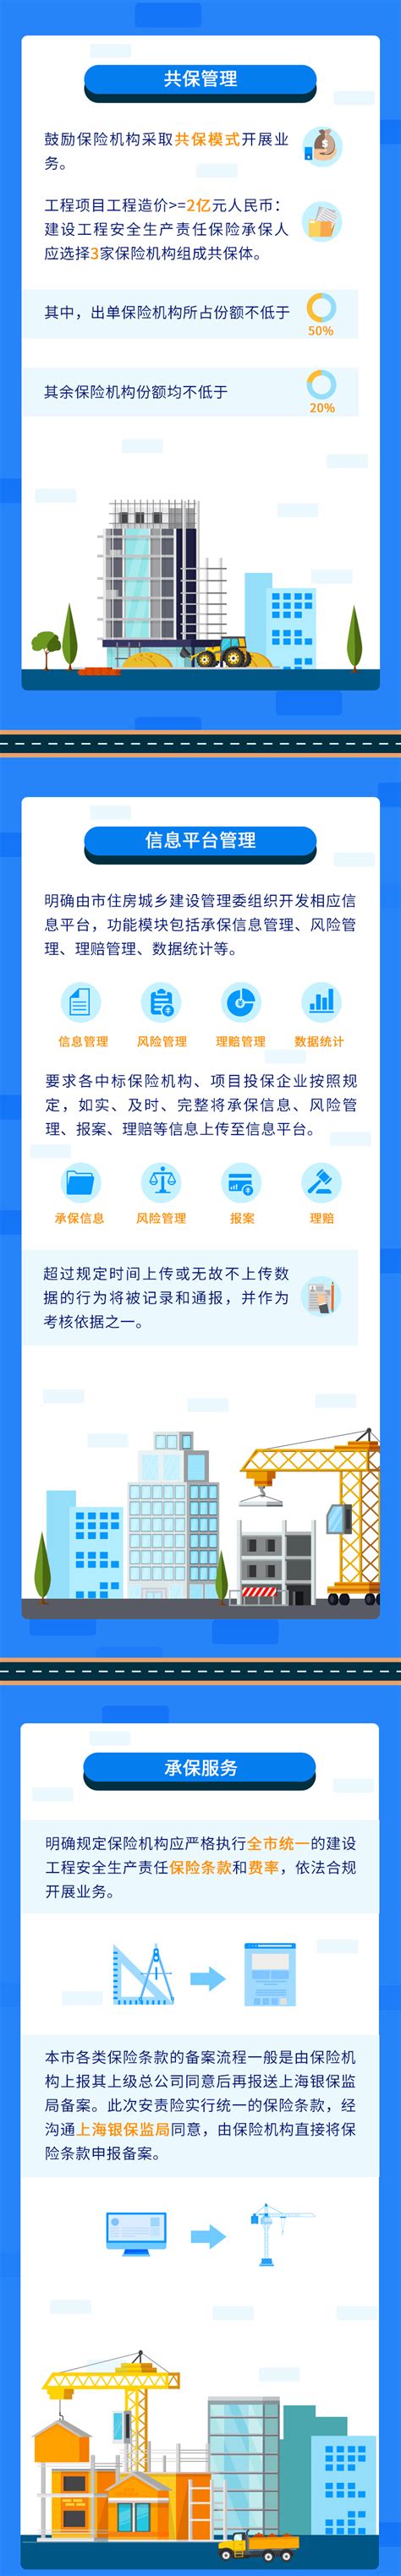 上海市建设工程信息服务平台